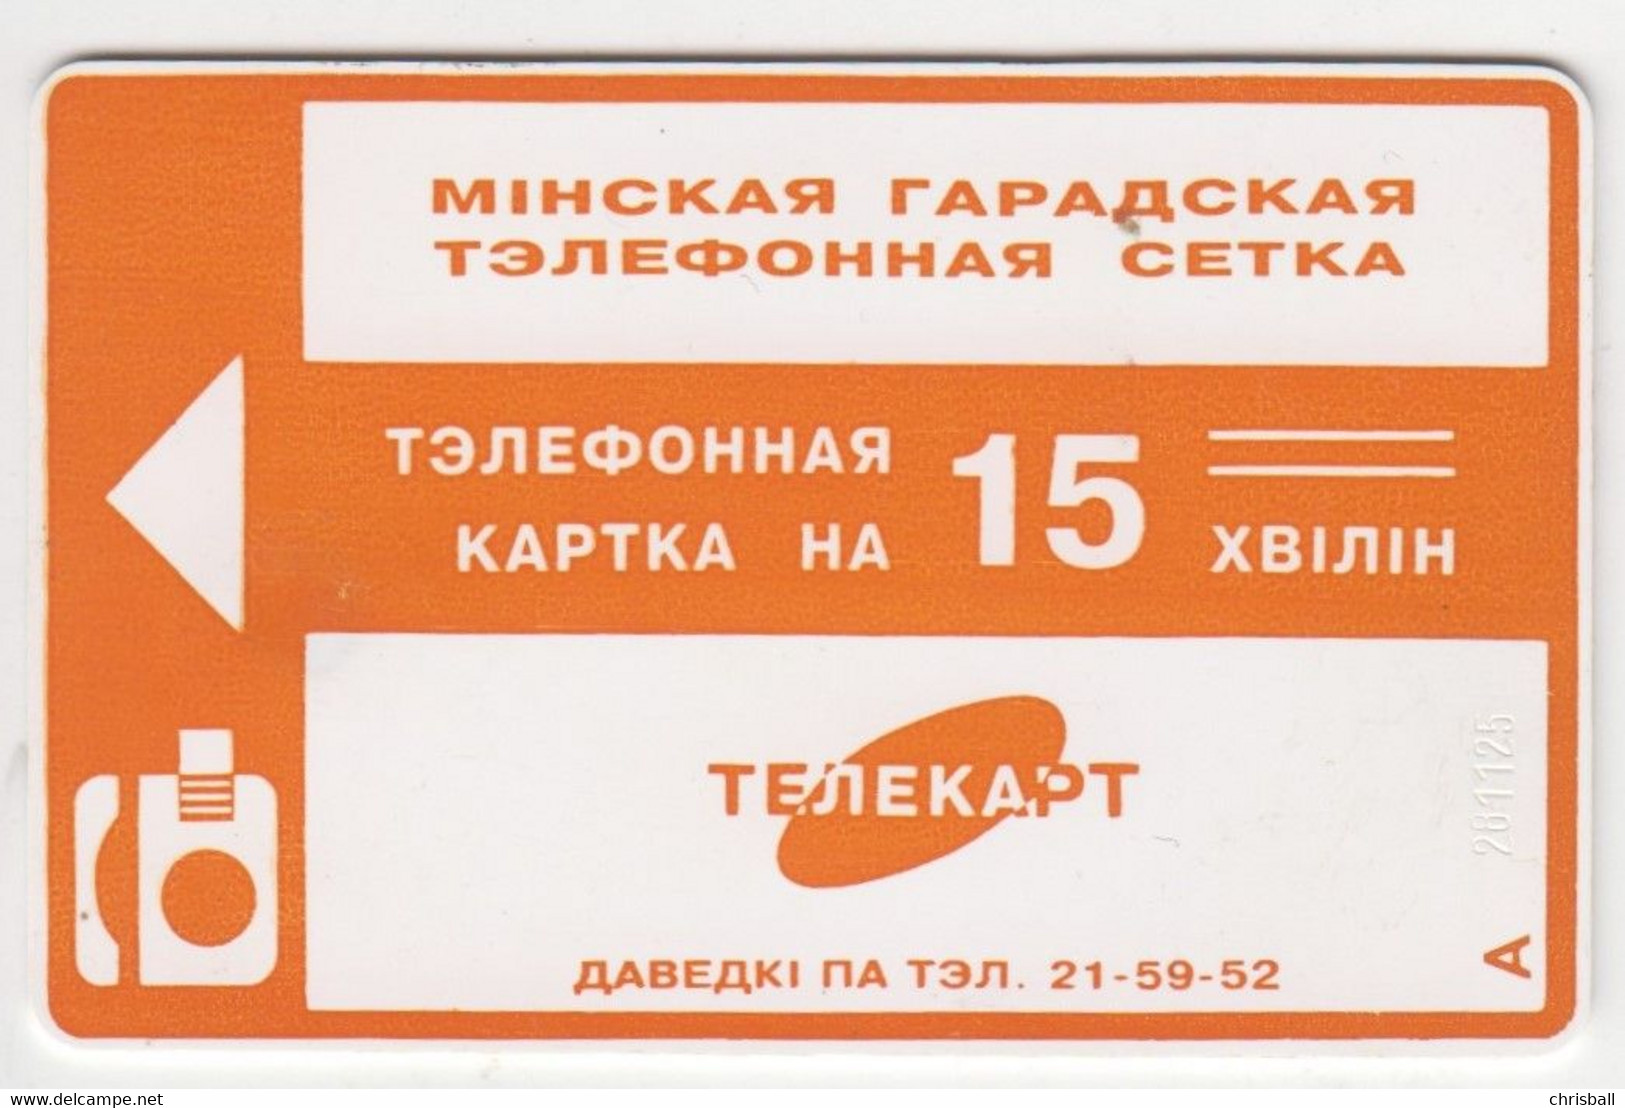 Belarus Phonecard 15u - Chipcard - Belarus